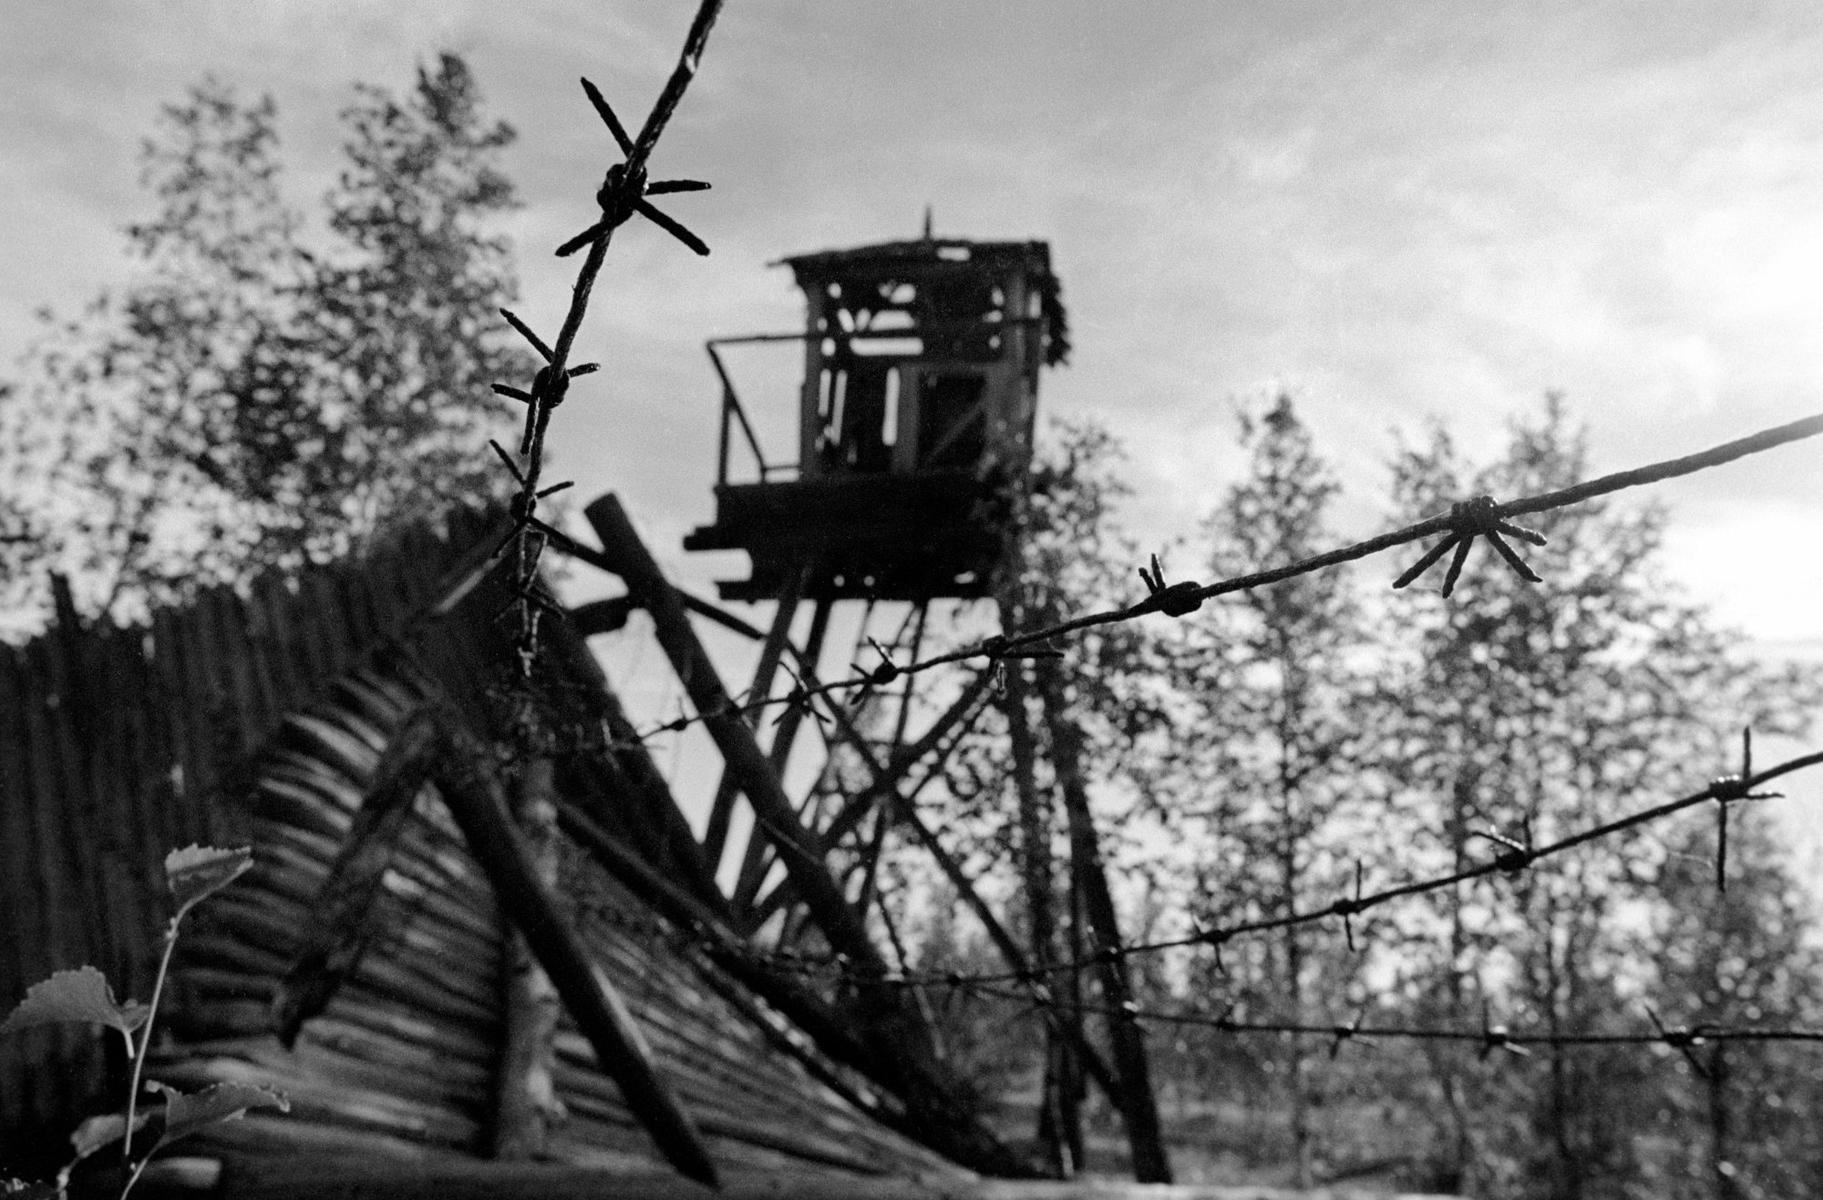 Сохранившаяся караульная вышка в одном из заброшенных лагерей. Фото: Алексей Щукин / ТАСС